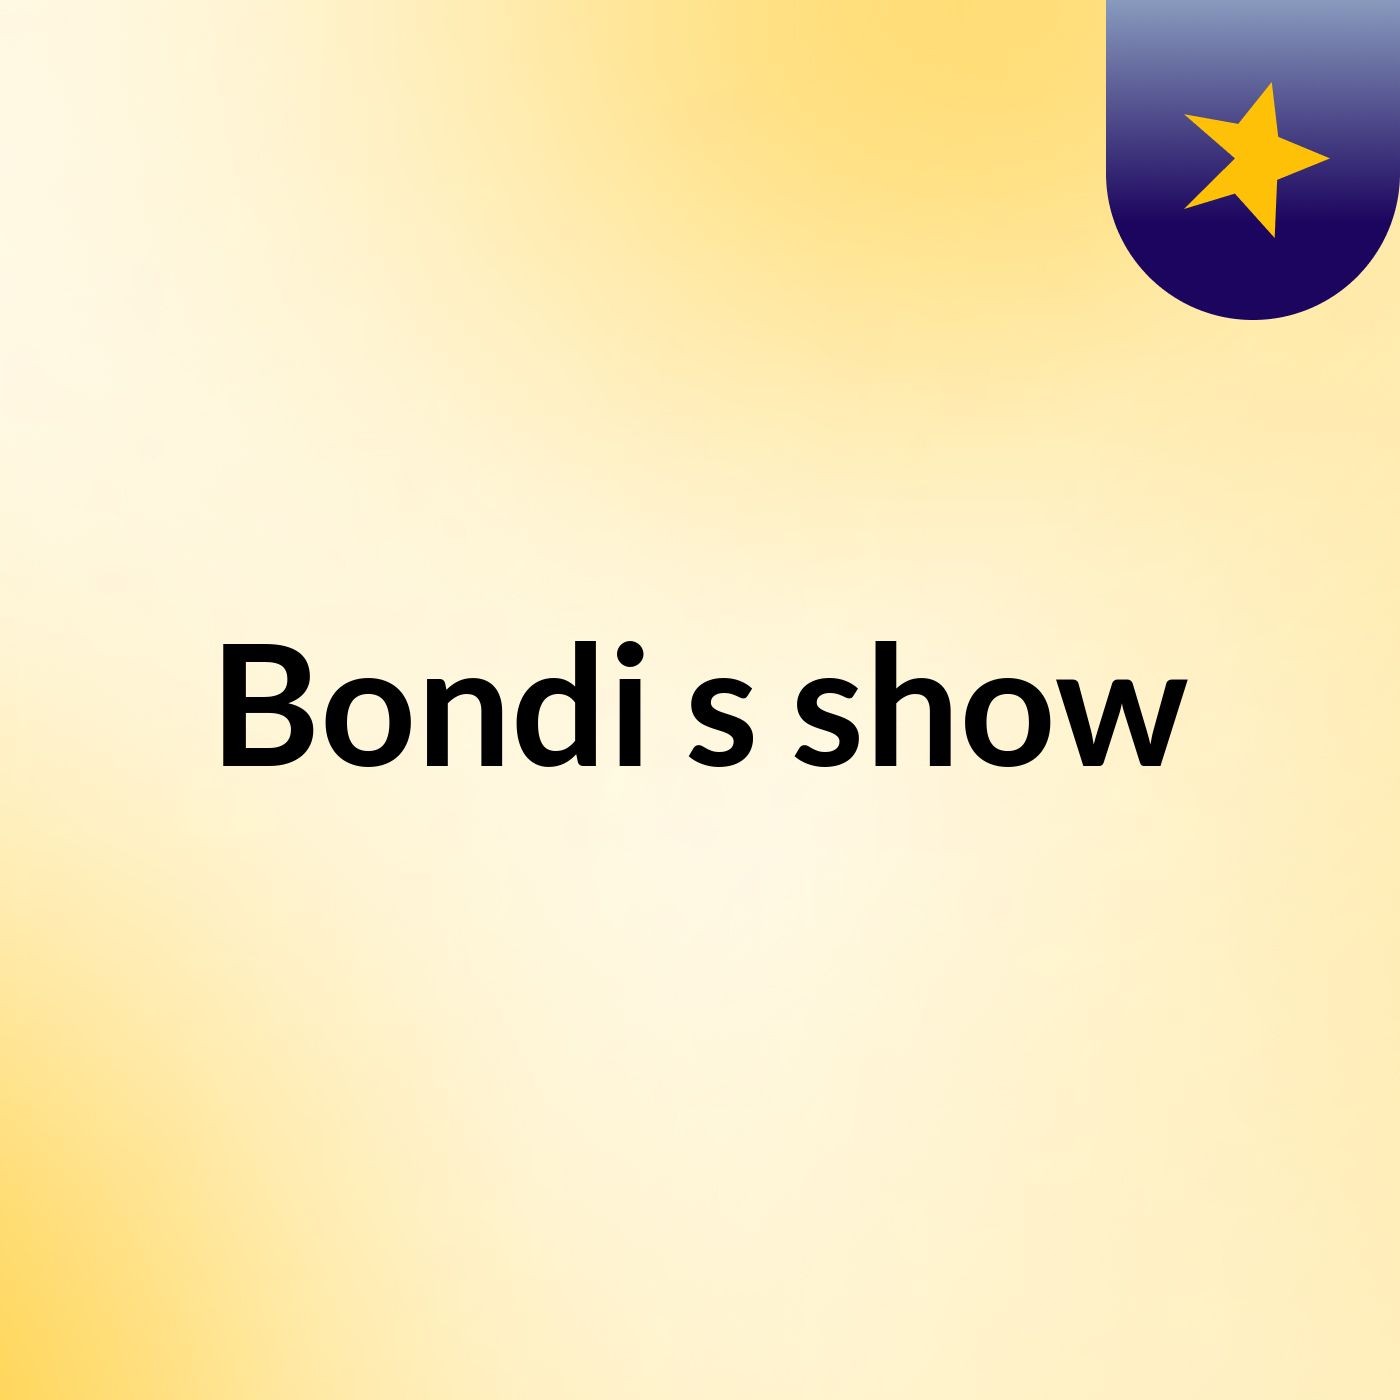 Bondi's show